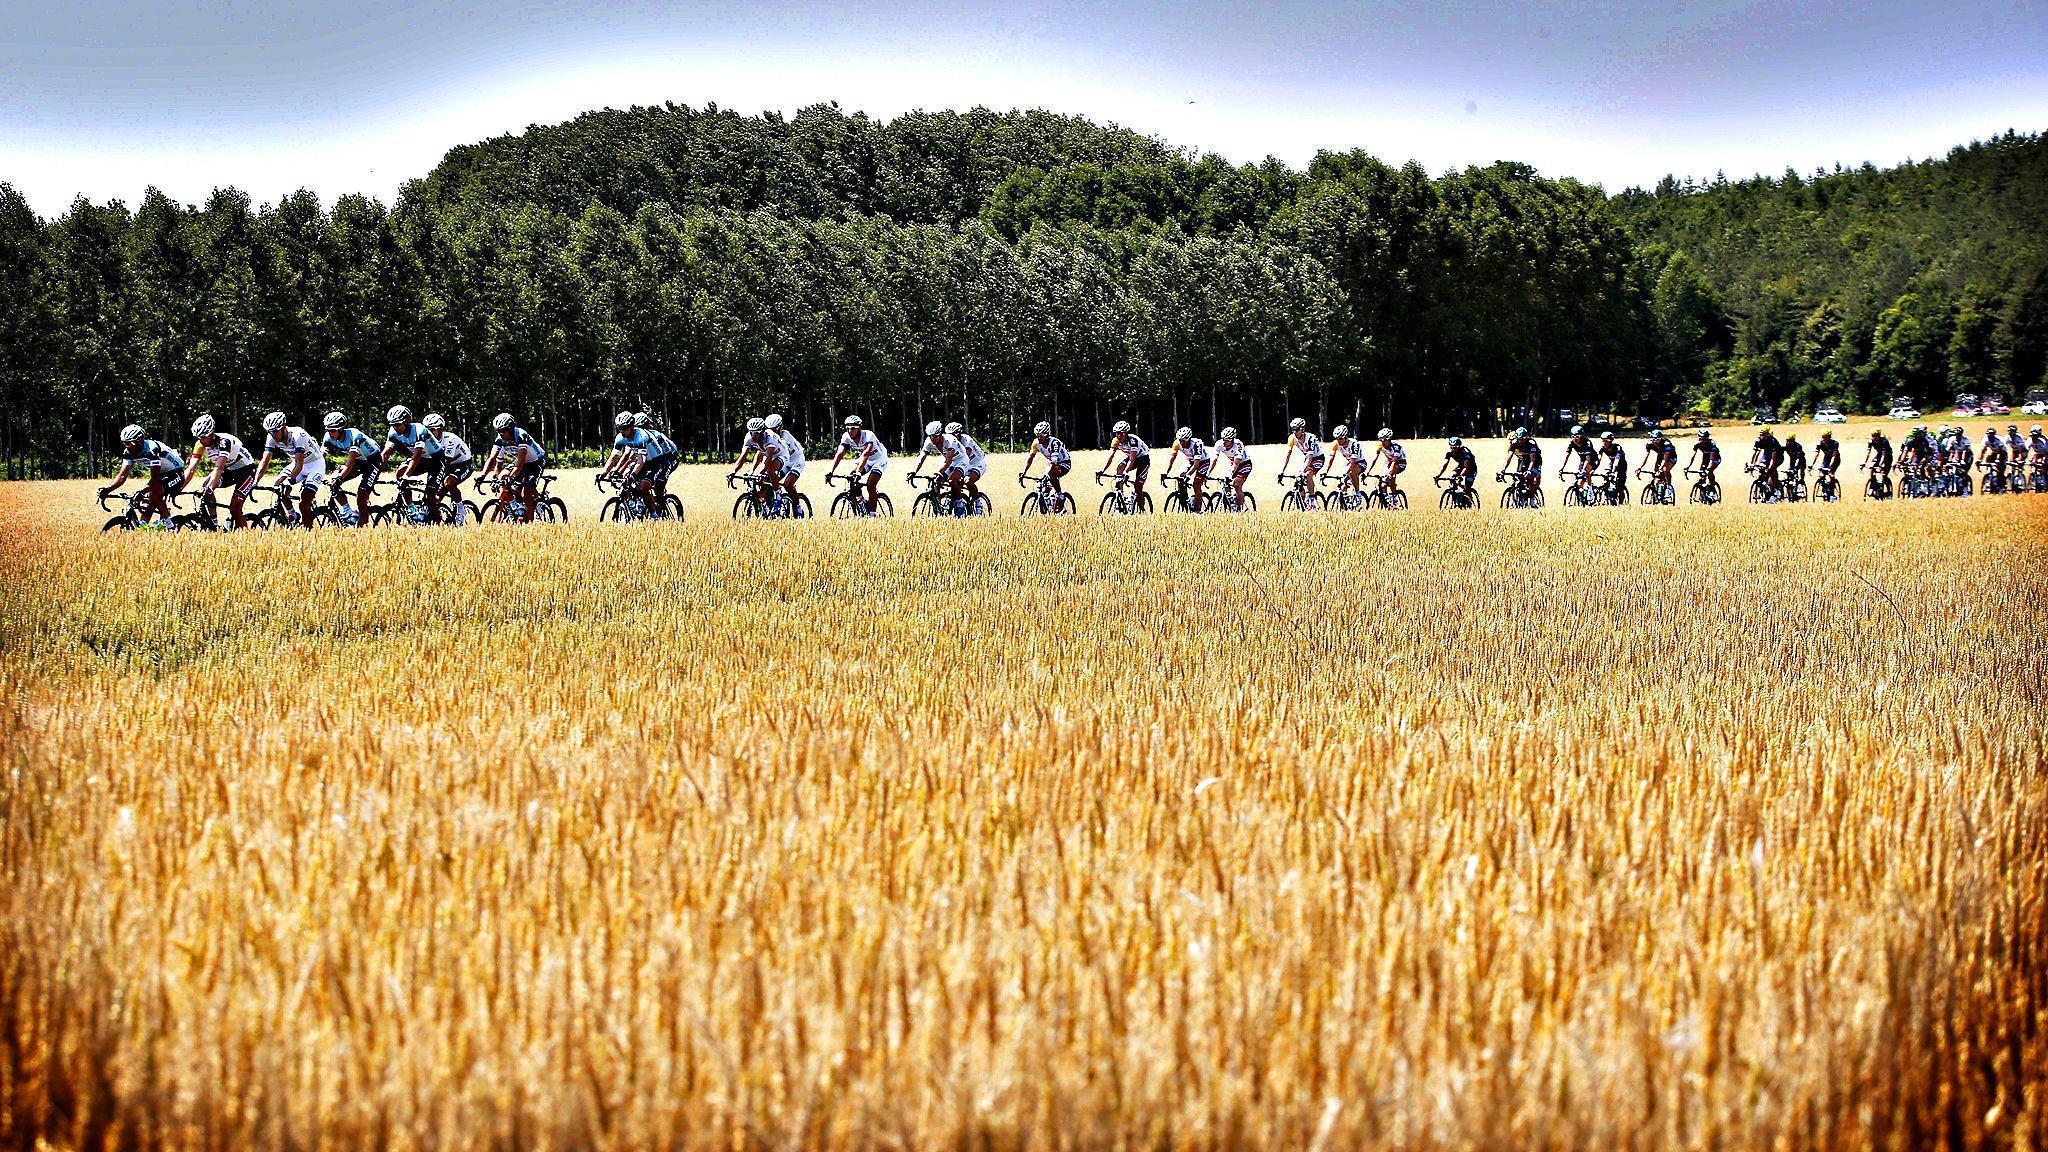 Picture This: The Tour de France